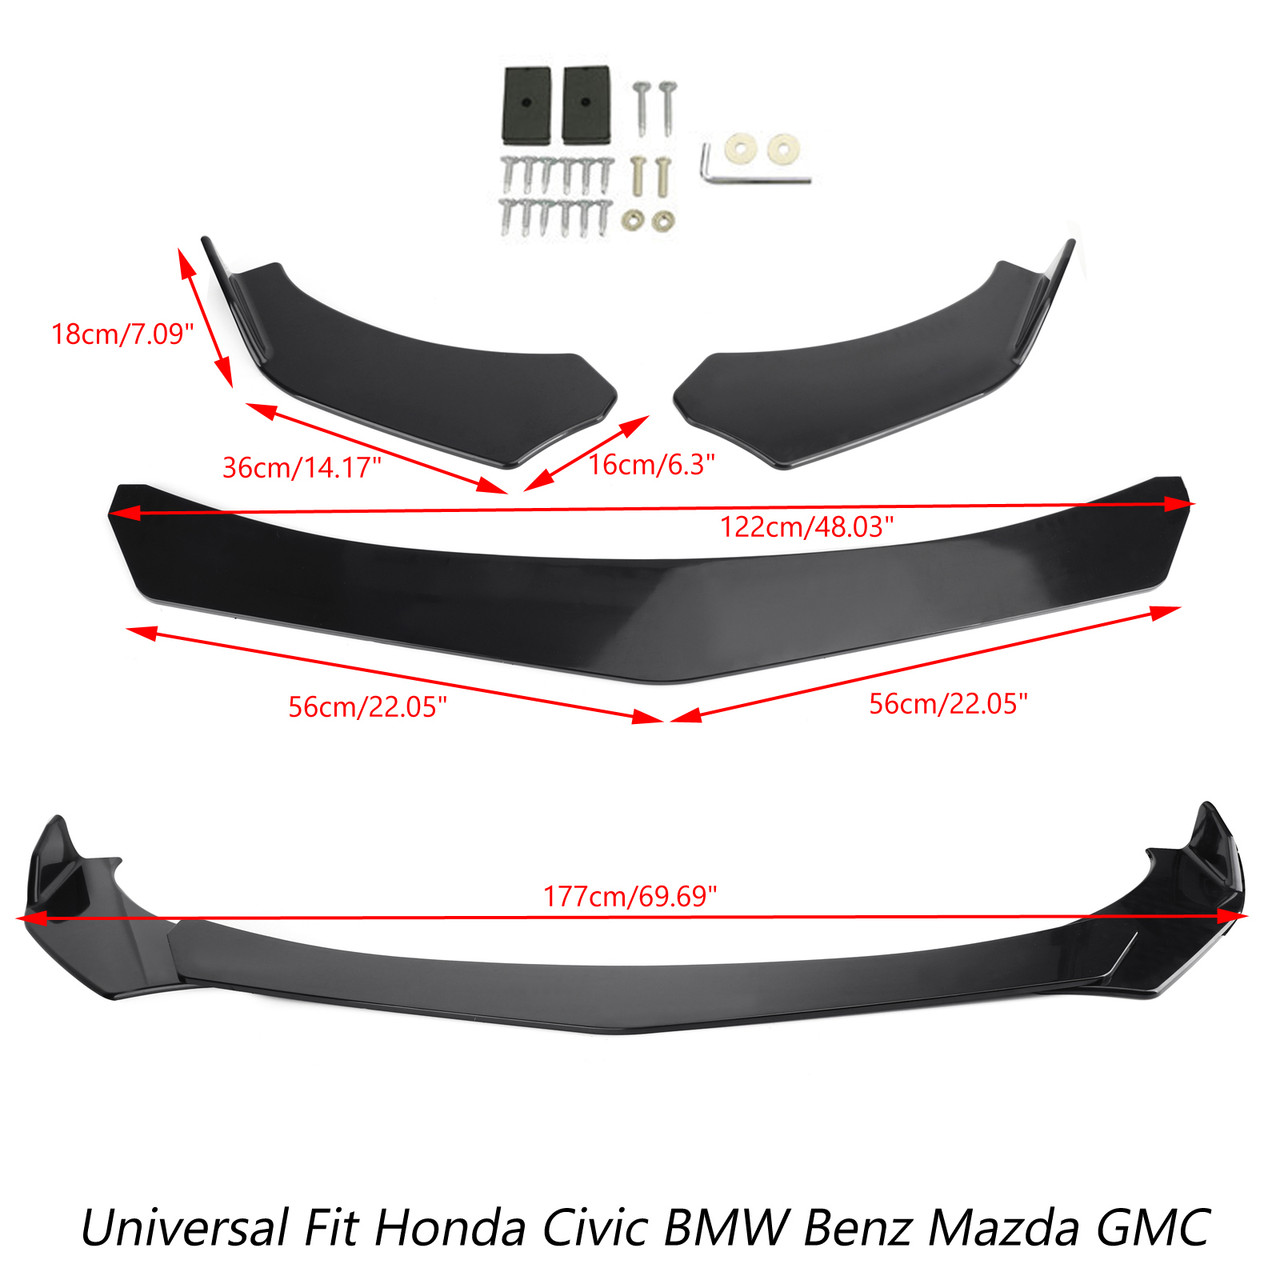 Universal Front Bumper Lip Body Kit Spoiler For Honda Civic BMW Benz Mazda GMC Black